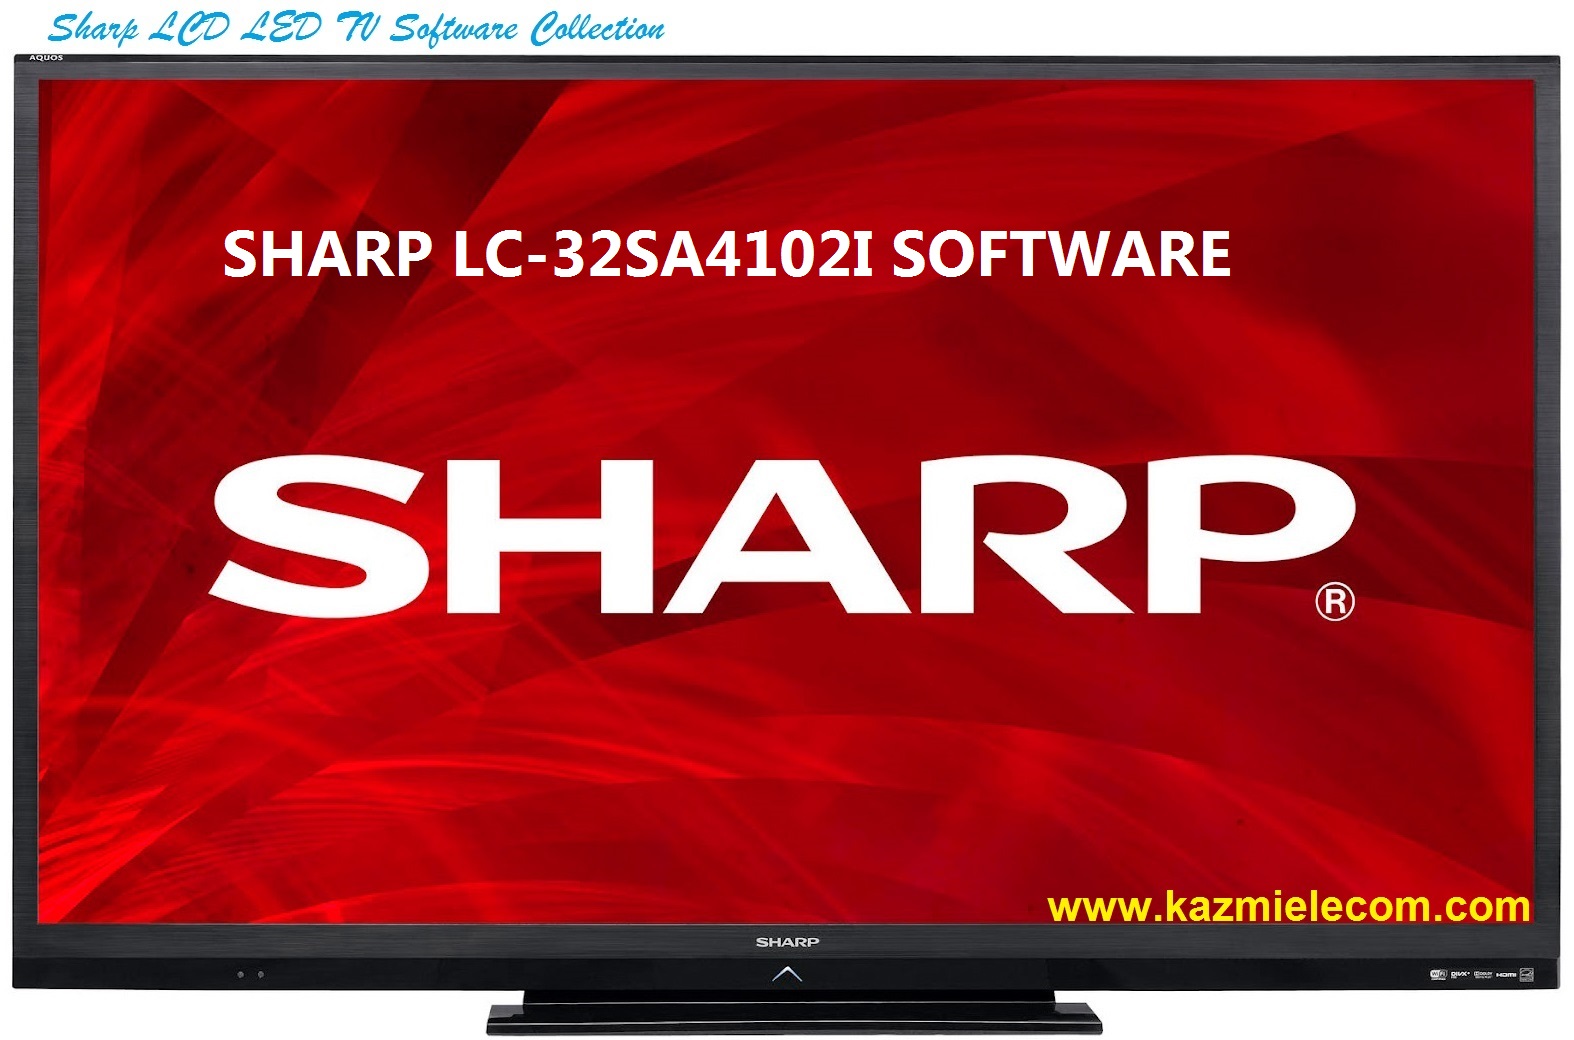 Sharp Lc-32Sa4102I